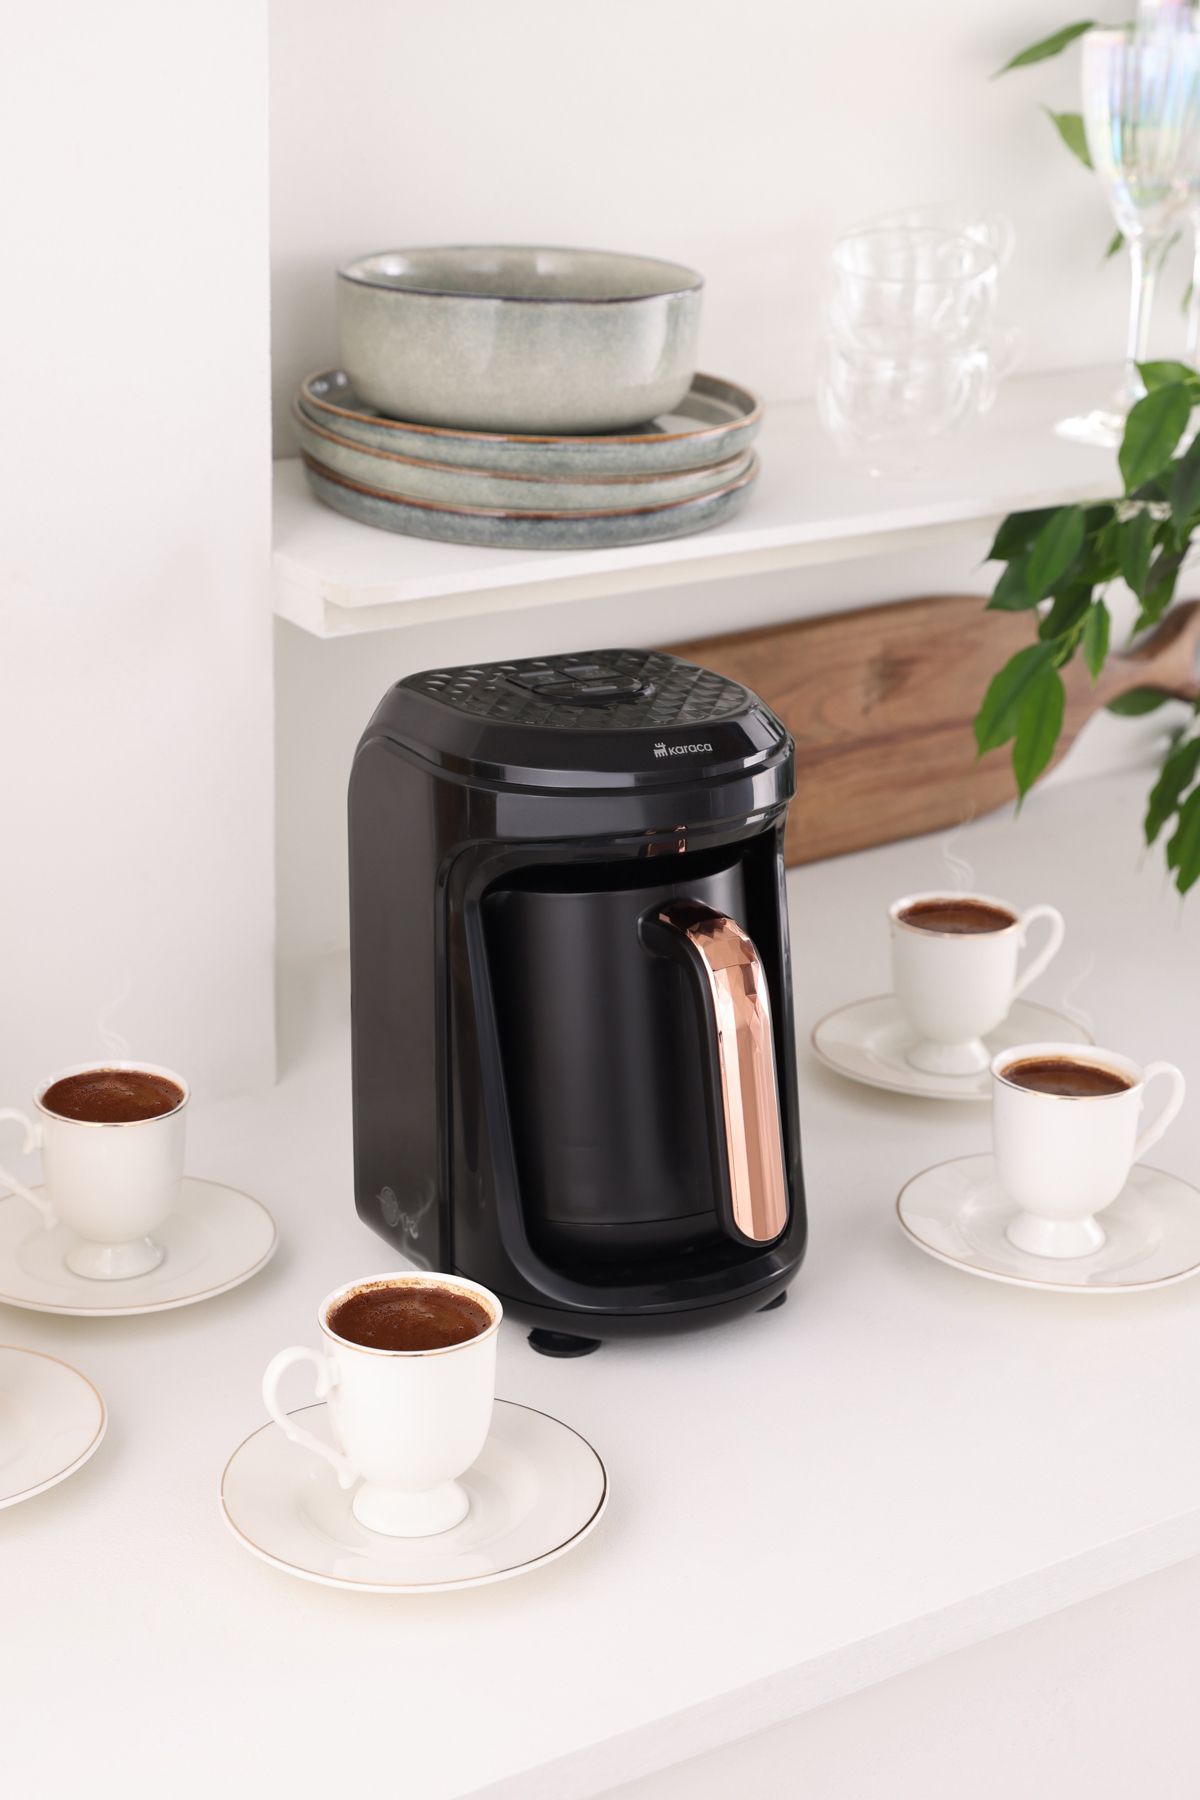 Karaca Hatır Hüps Quartz Közde, Sütlü Içecek Hazırlama Türk Kahve Makinesi 5 Fincan Kapasiteli Black Copper